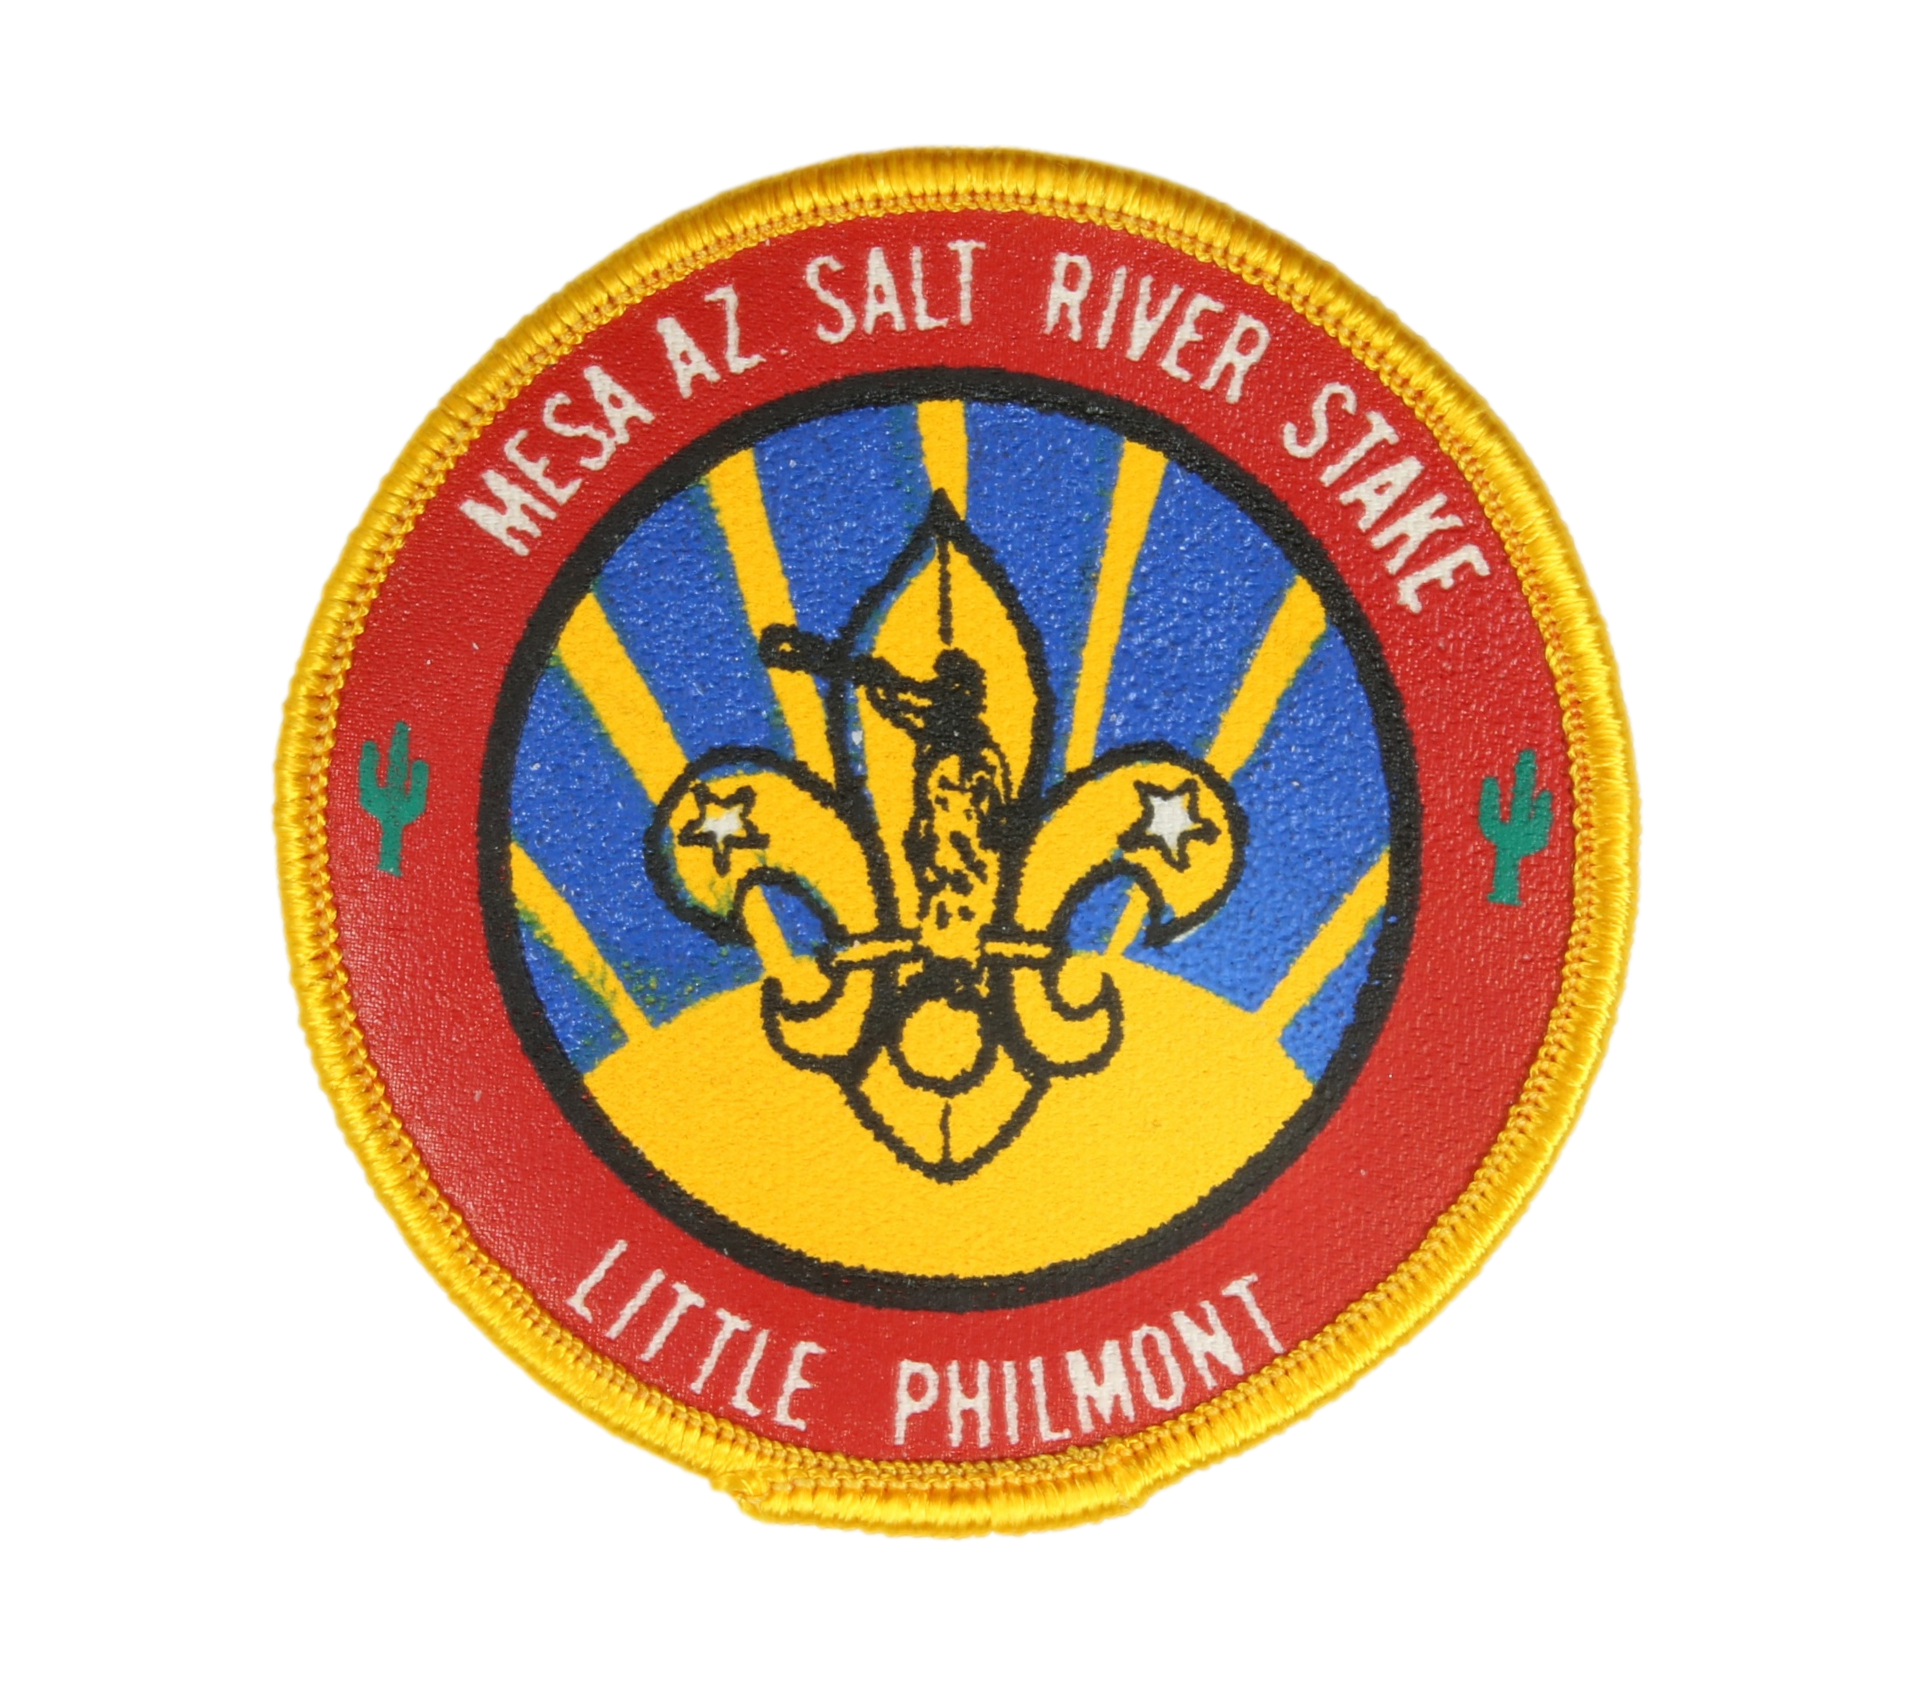 Meza AZ Salt River Stake Little Philmont PP